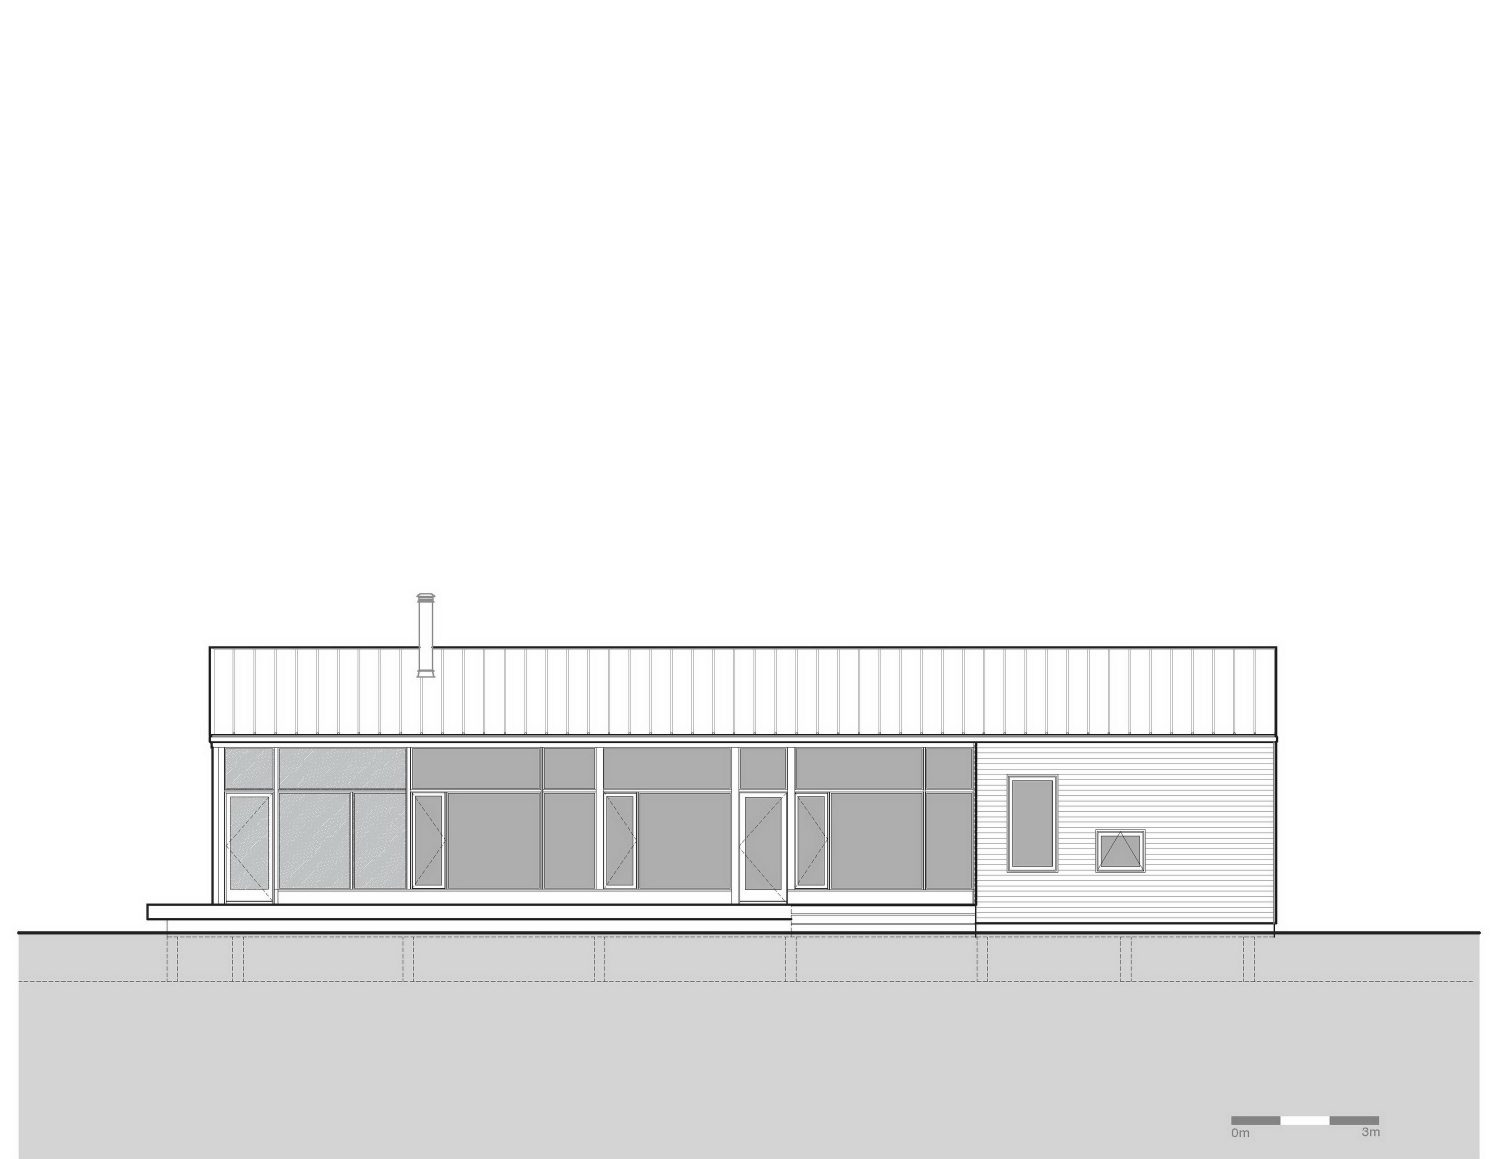 Lockeport Beach House by Nova Tayona Architects